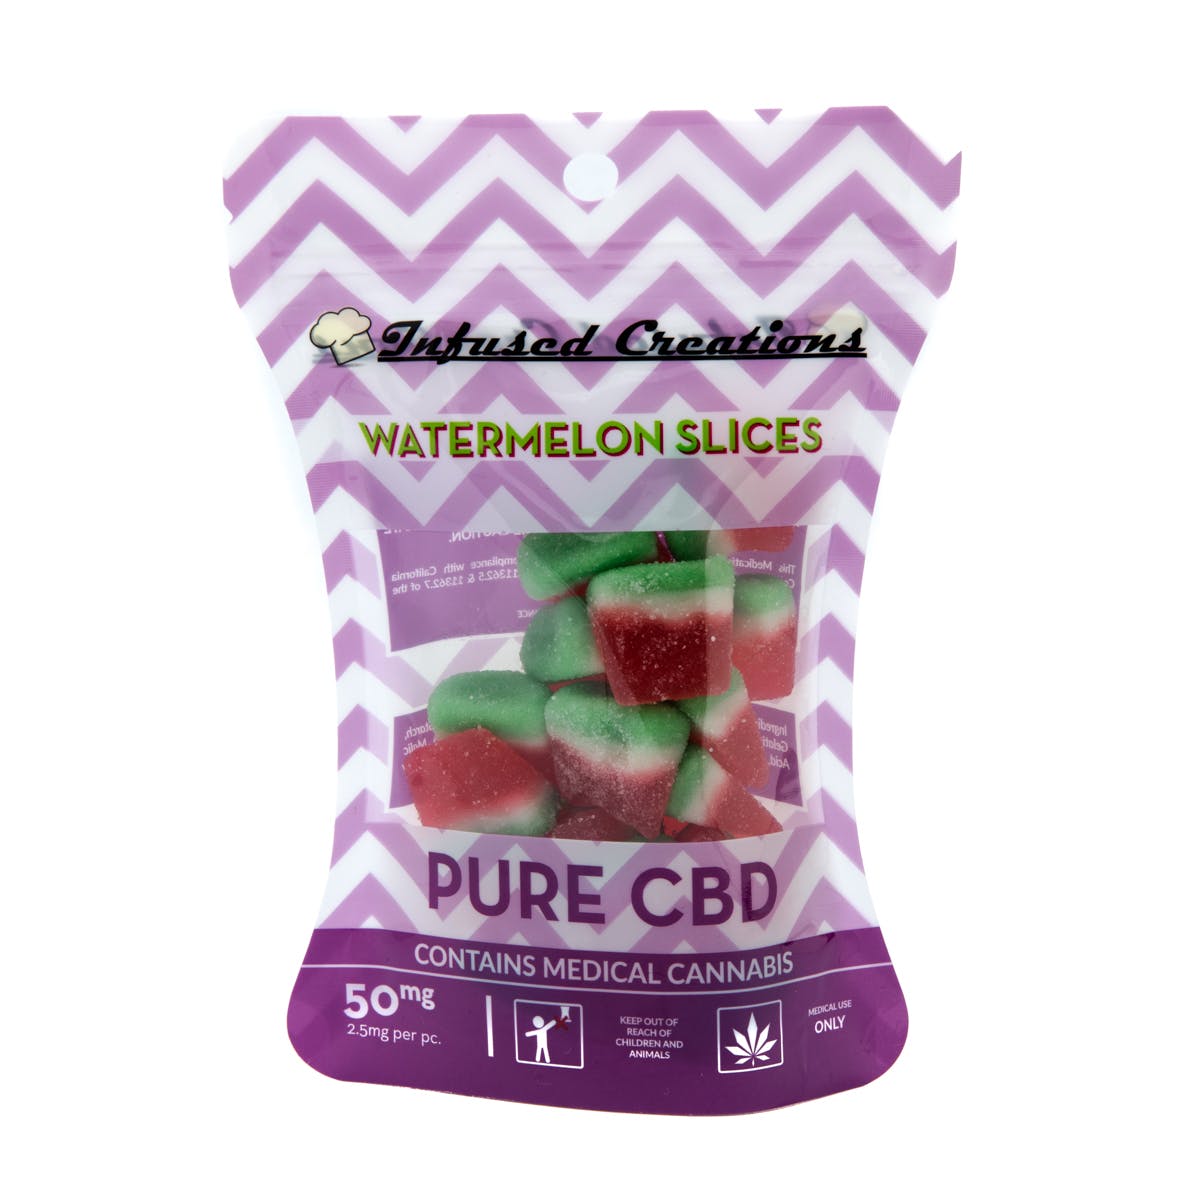 Watermelon Slices Pure CBD, 50mg